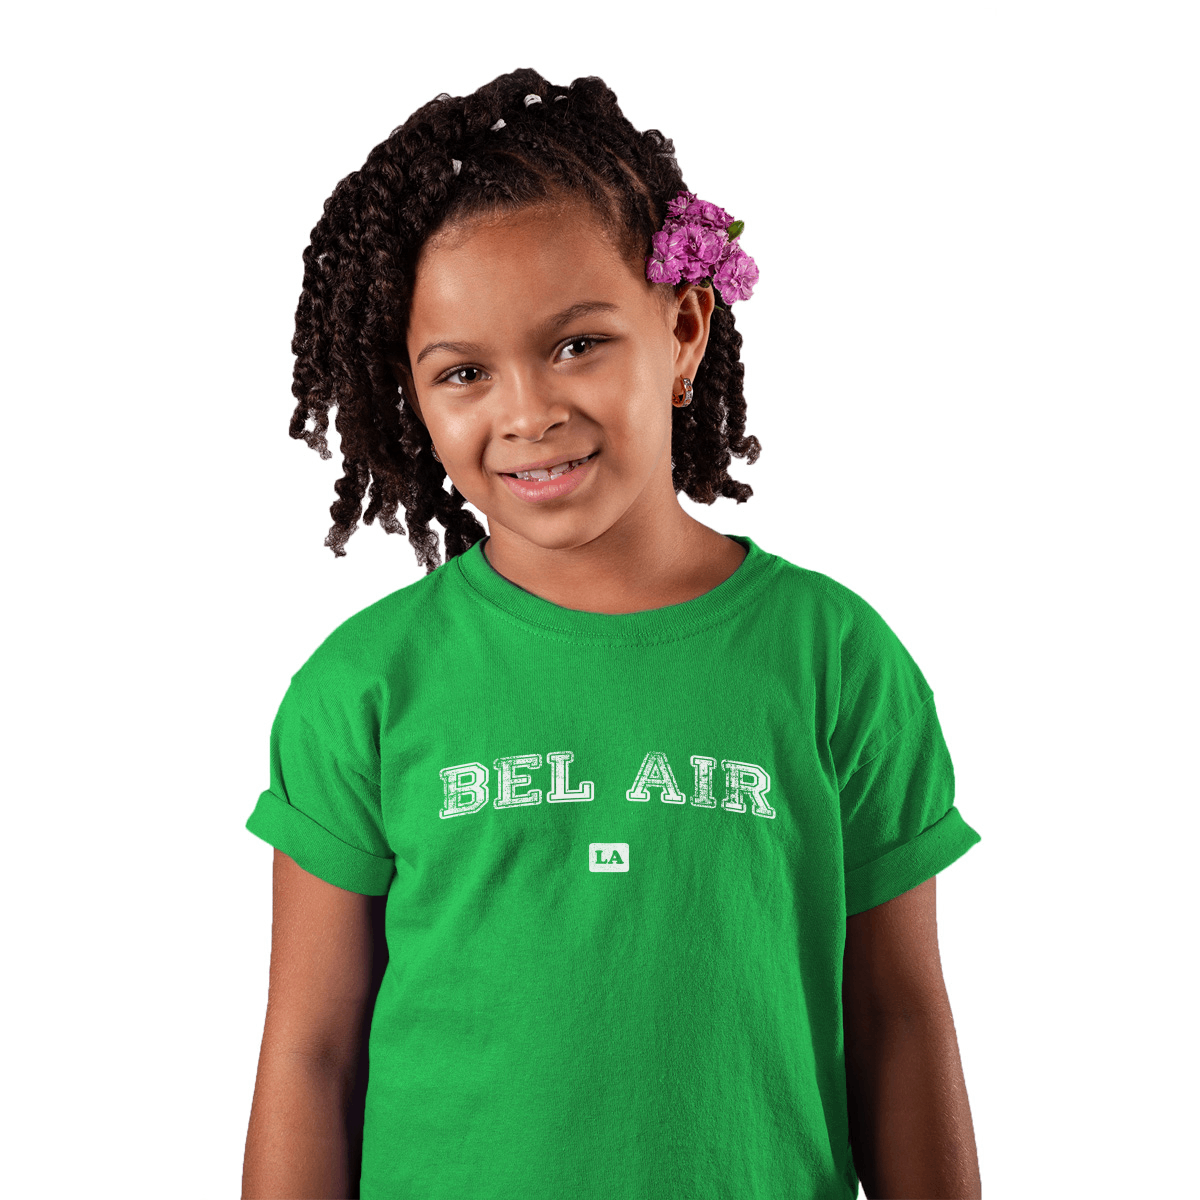 Bel Air LA Represent Toddler T-shirt | Green